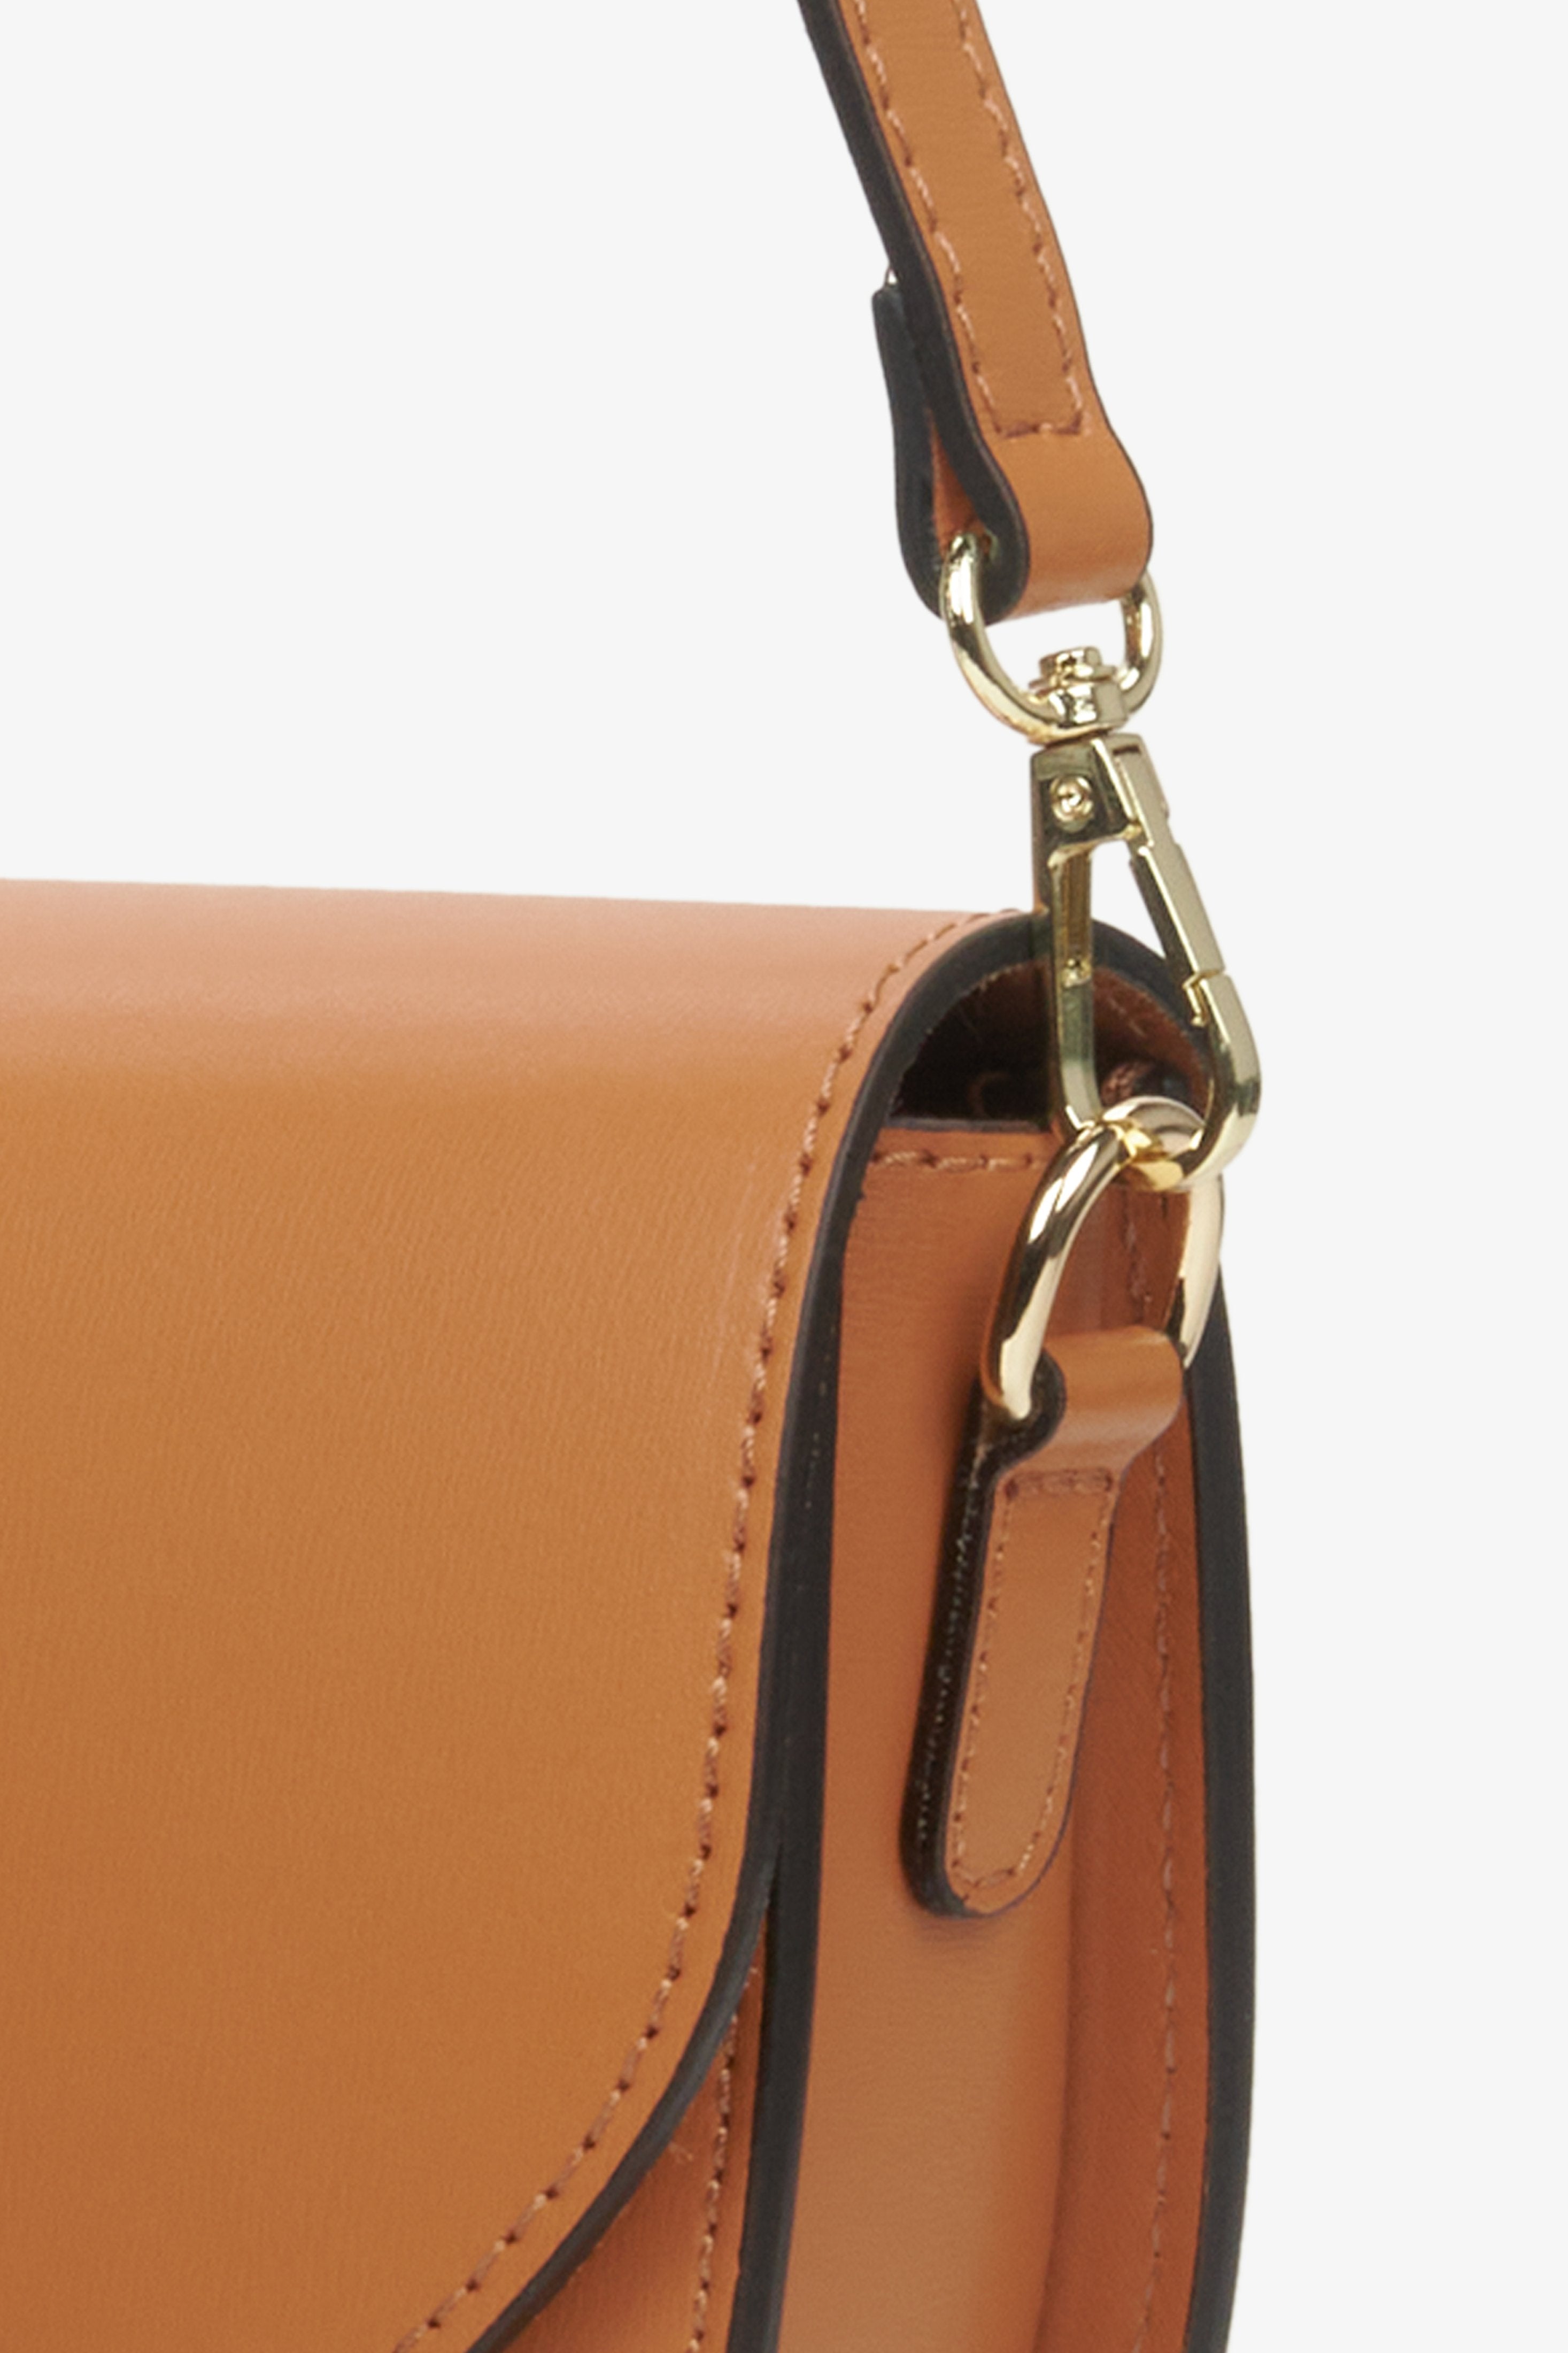 Damska torebka ze skóry naturalnej w kolorze brązowym - zbliżenie na złoty karabinek i system przeszyć torby.